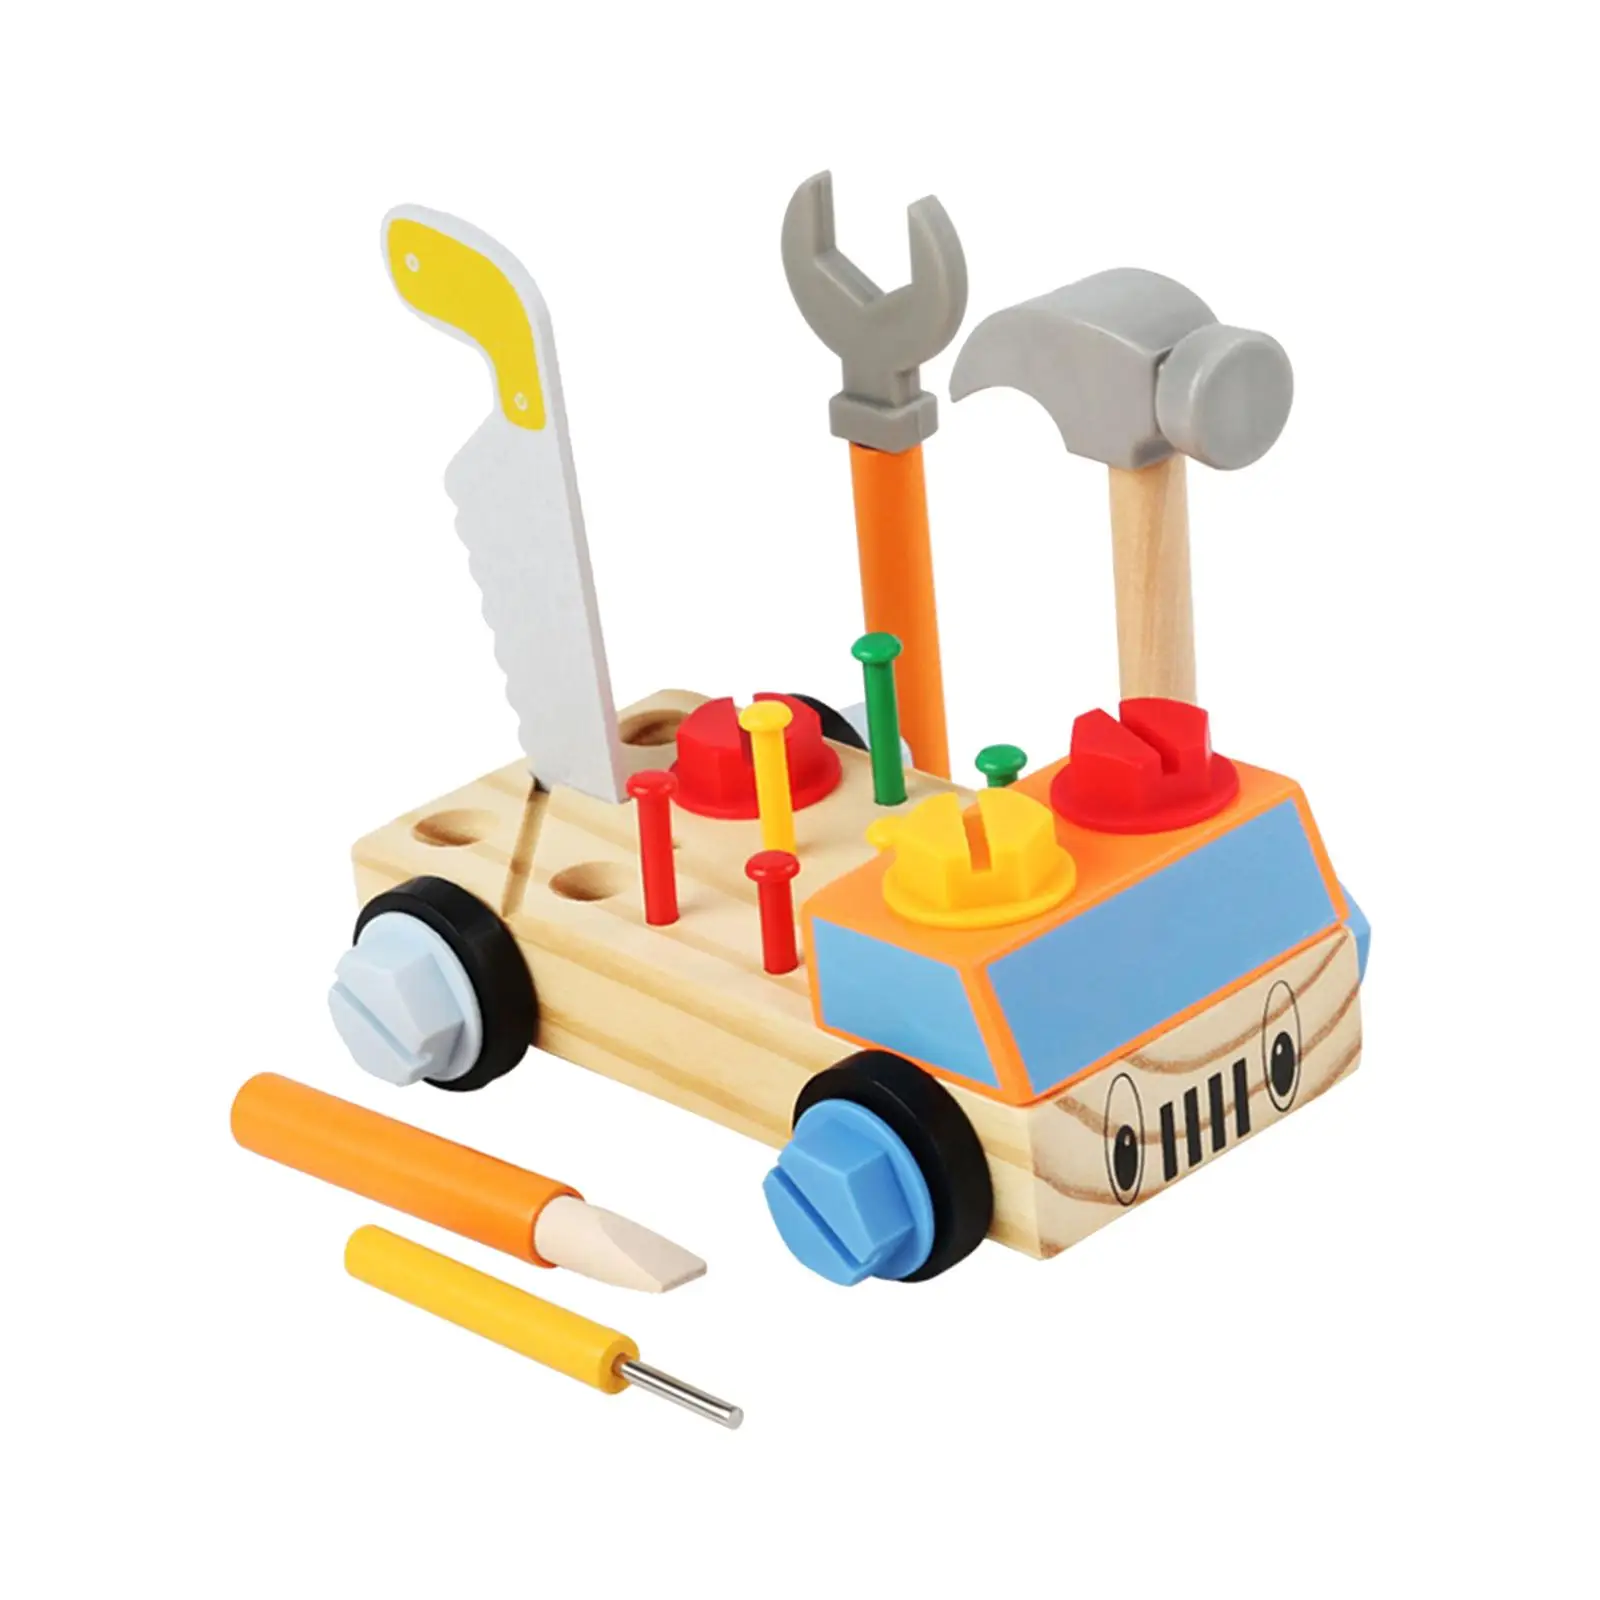 Wooden Play Tool Set Repair Tools Early Educational Workshop for Preschool